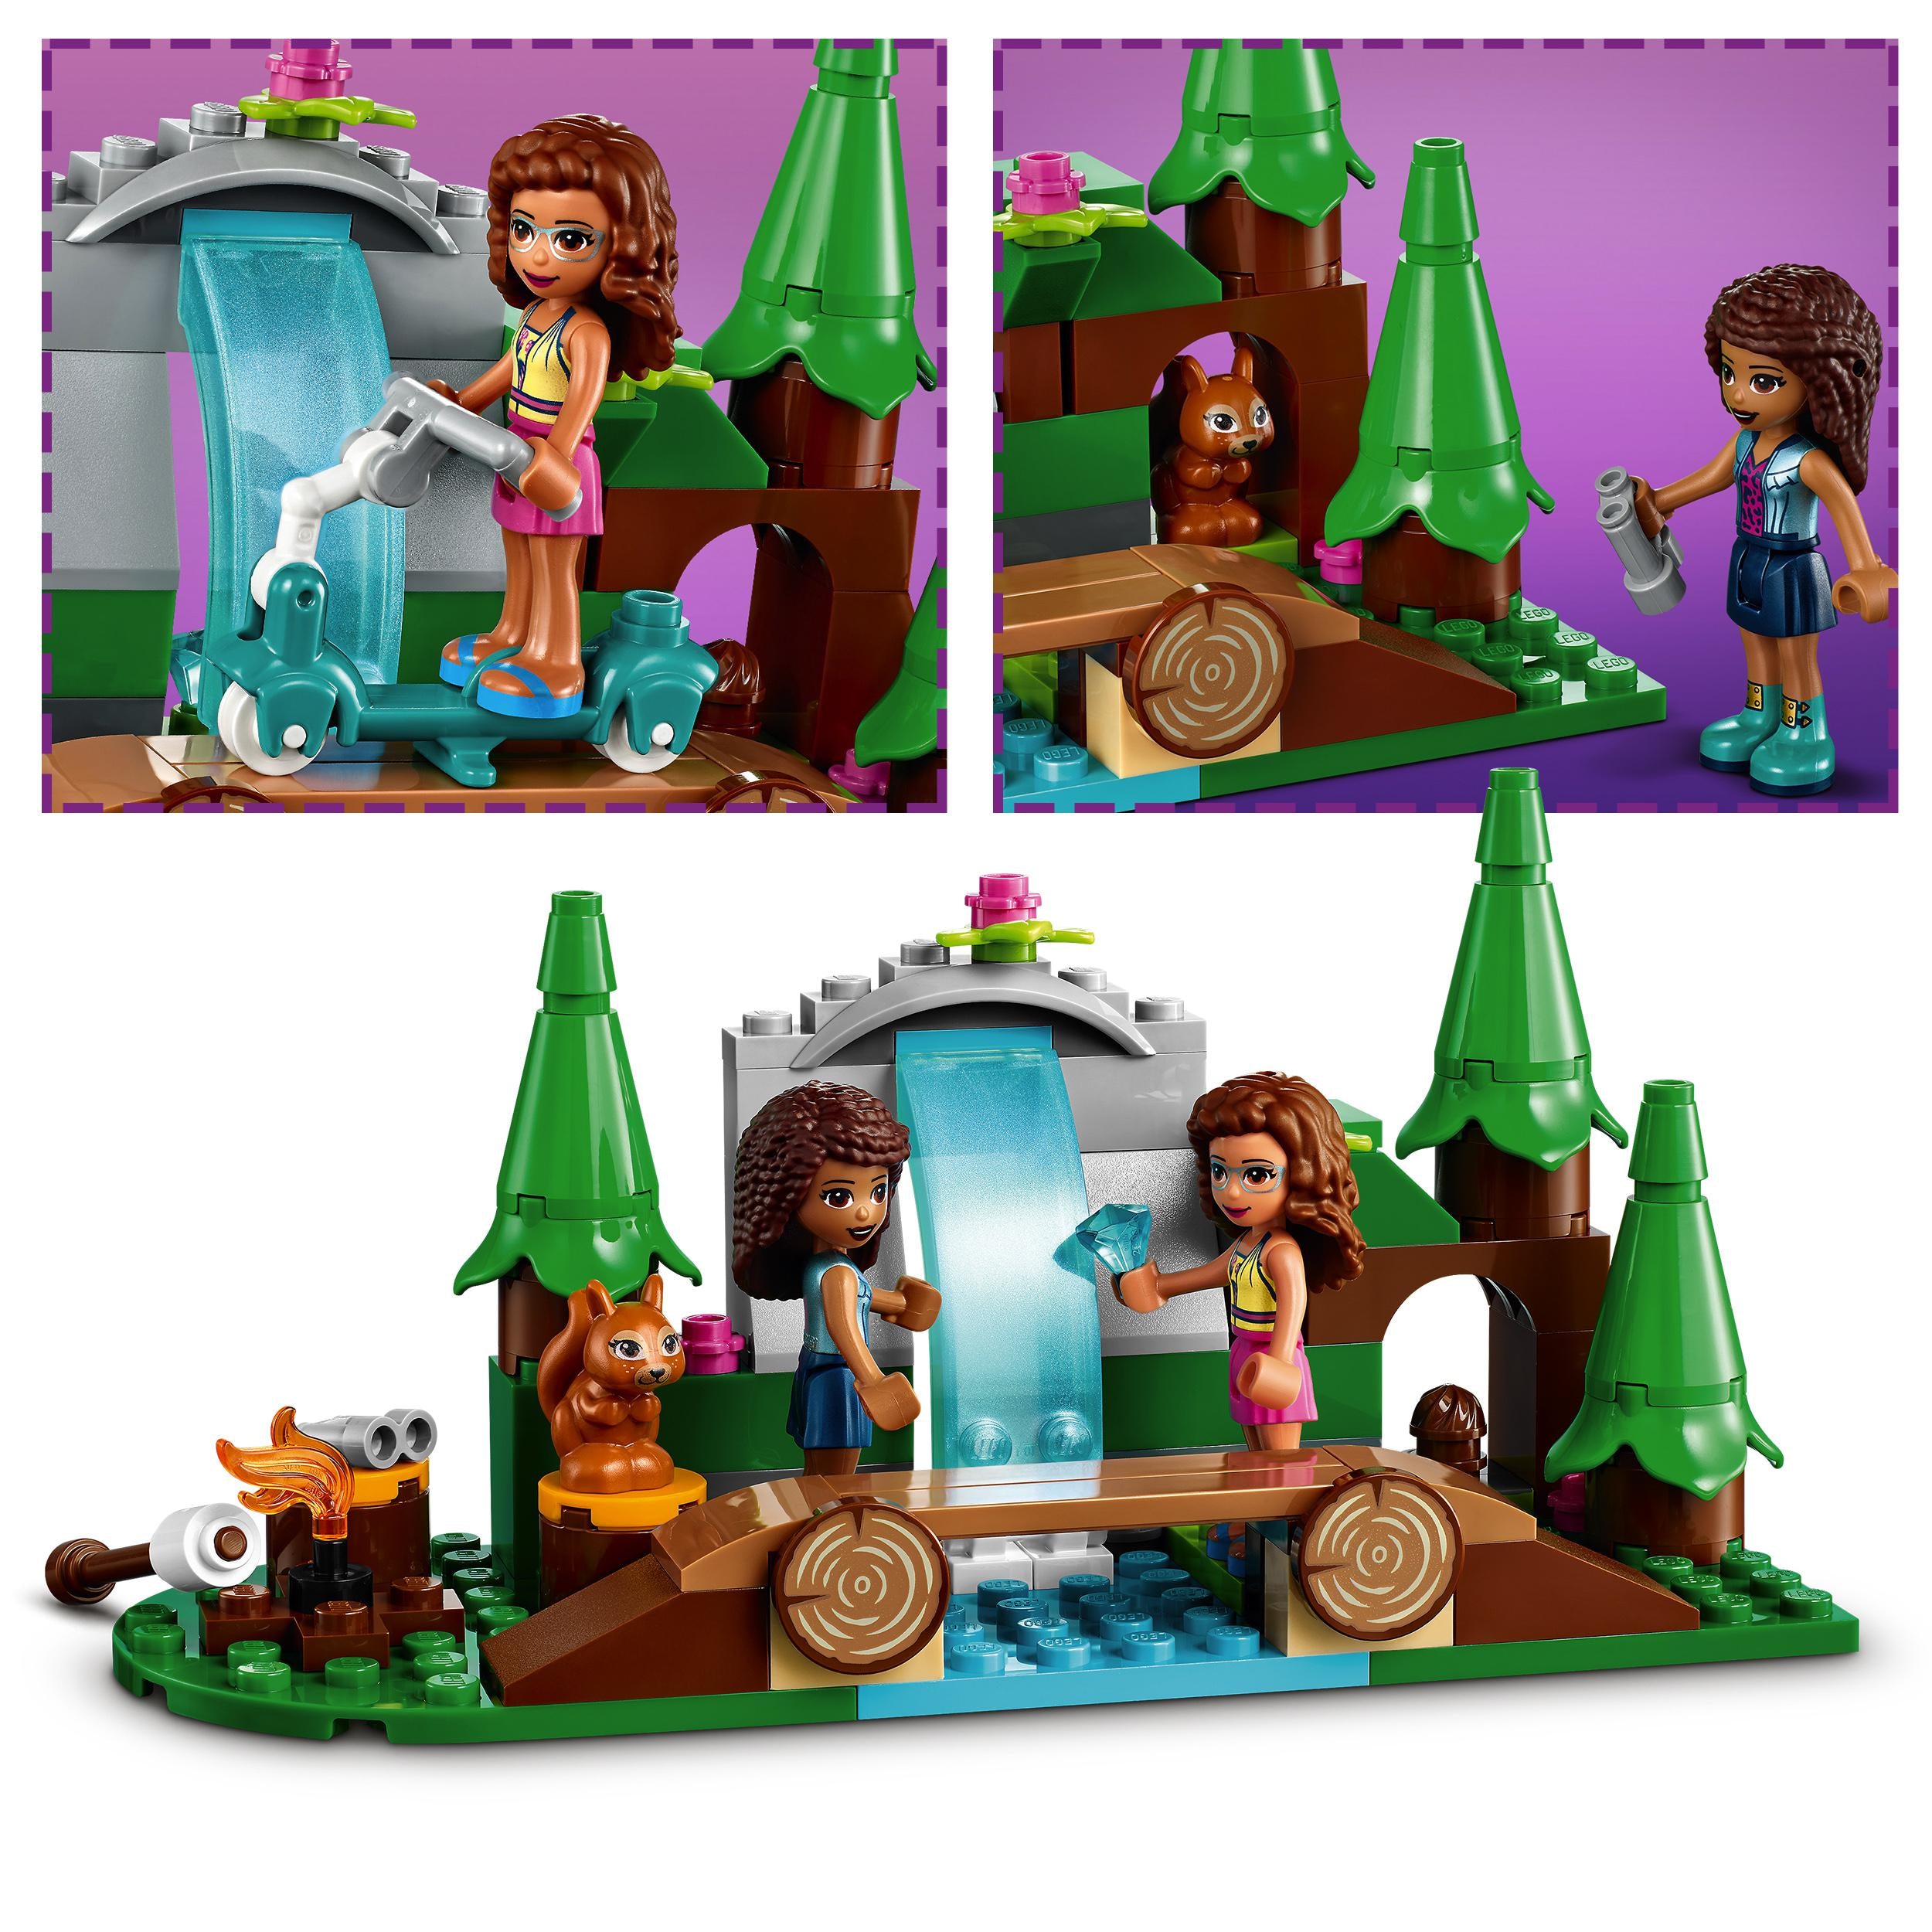 41677 LEGO® Friends - La cascata nel bosco